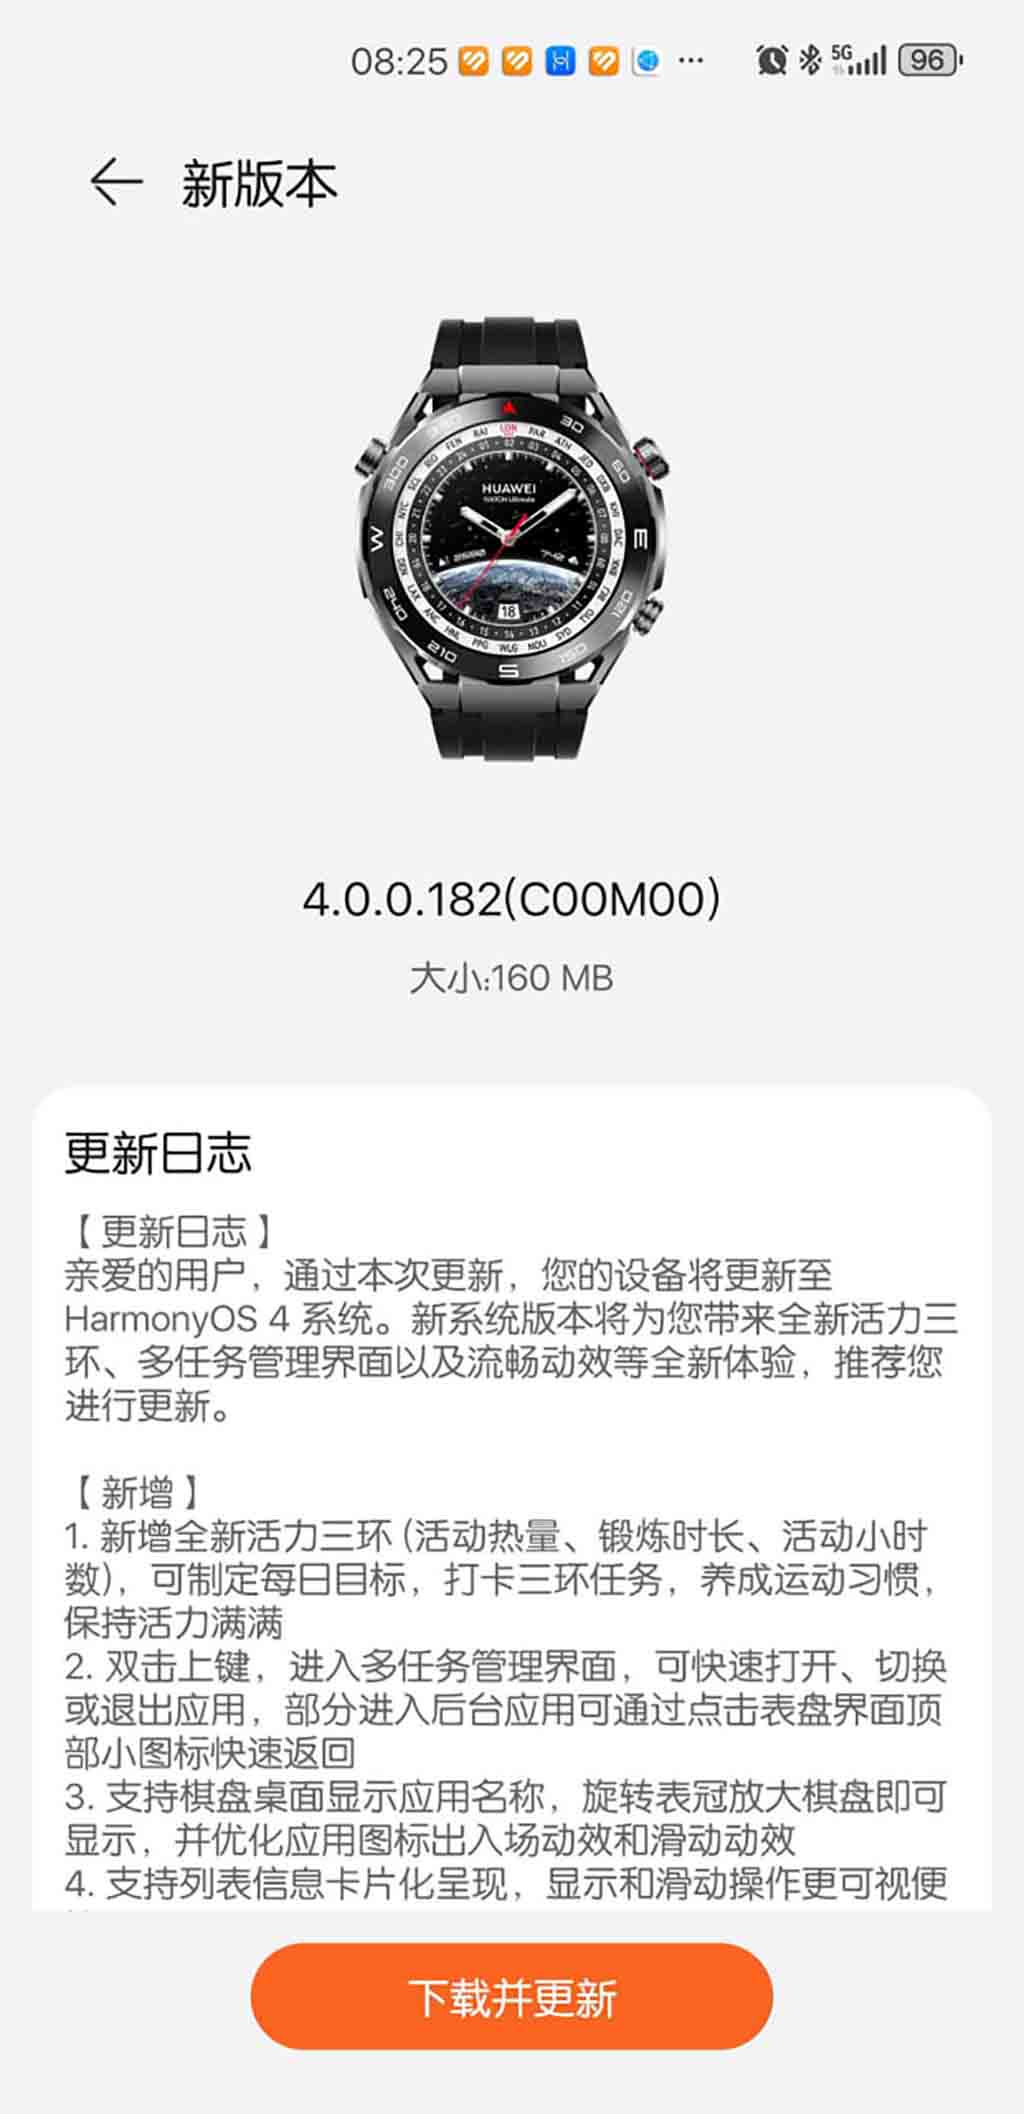 Huawei Watch Ultimate HarmonyOS 4